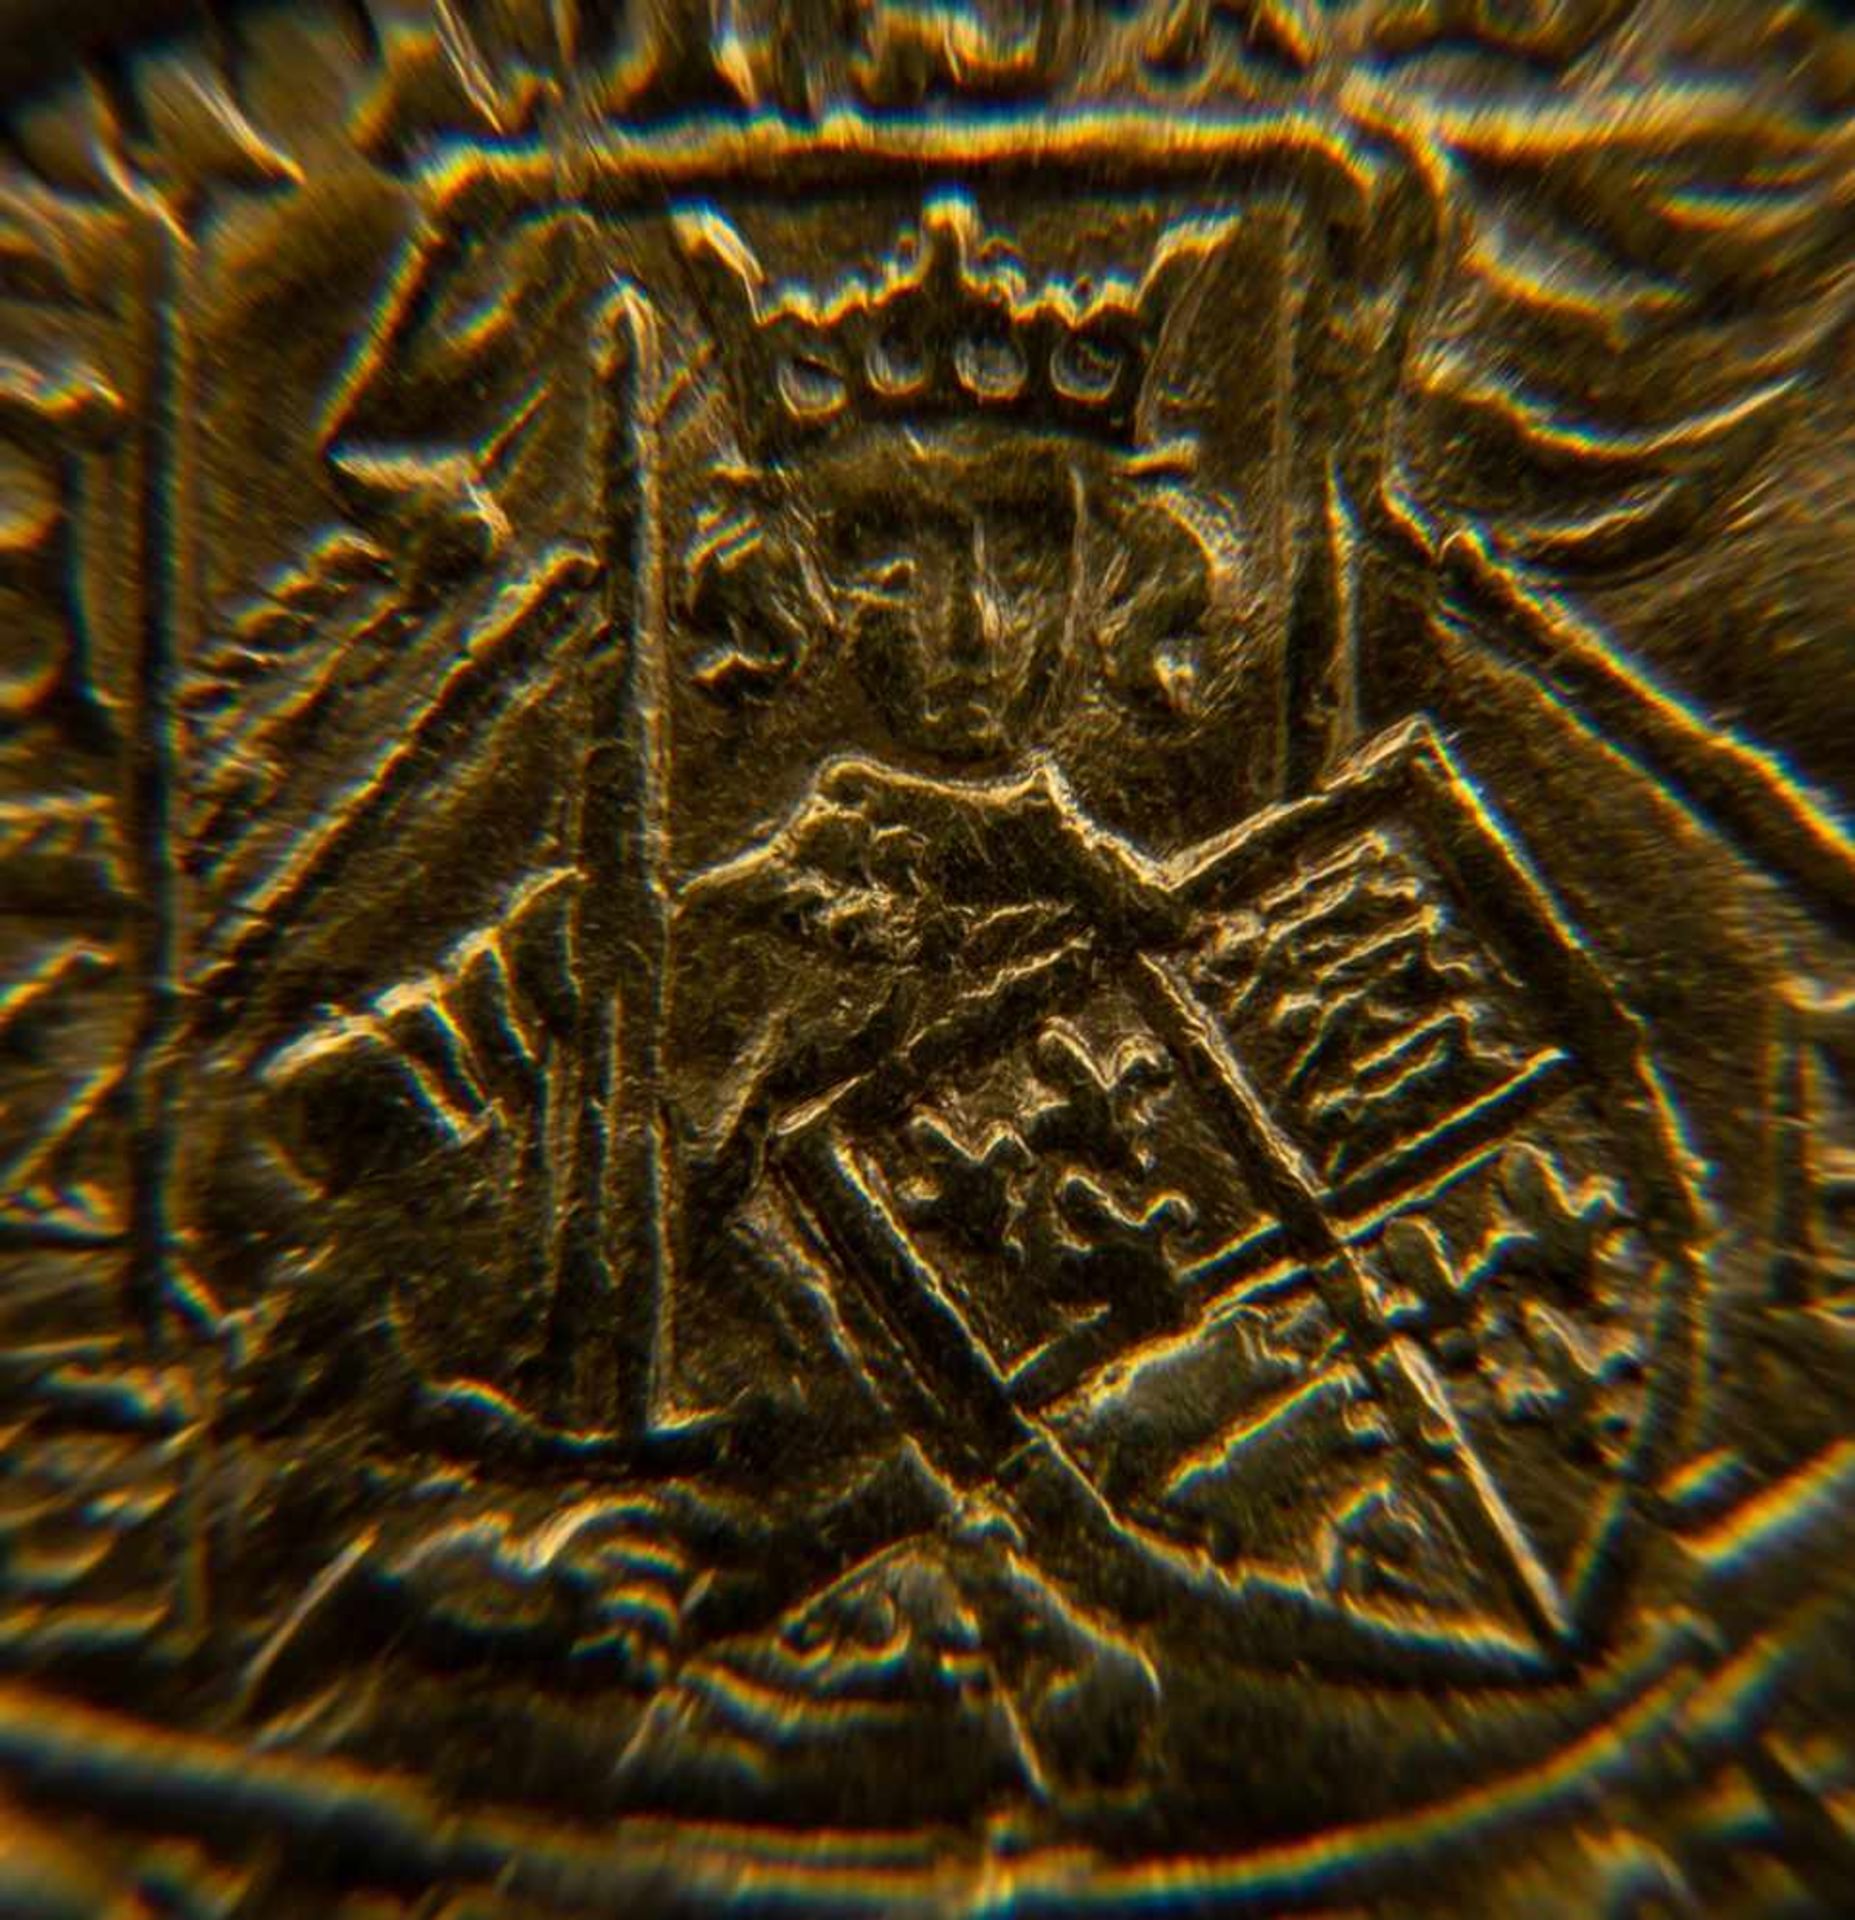 GOLD RYAL / ROSE NOBLE - Goldmünze. England 15. - 17. Jhd., vorderseitig König mit Schwert, Schild & - Bild 4 aus 15